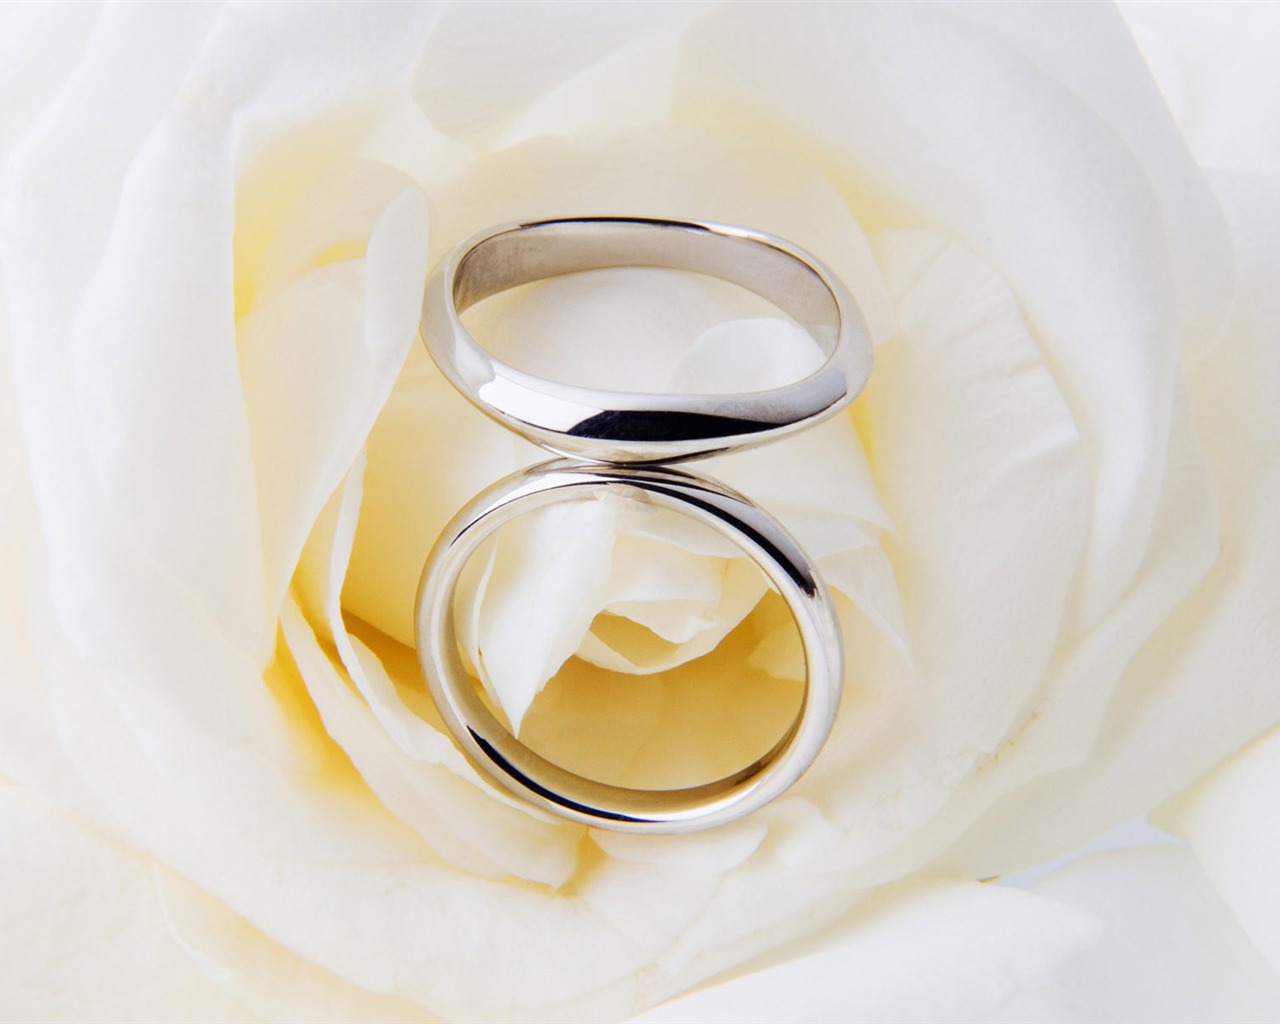 Mariage et papier peint anneau de mariage (2) #18 - 1280x1024